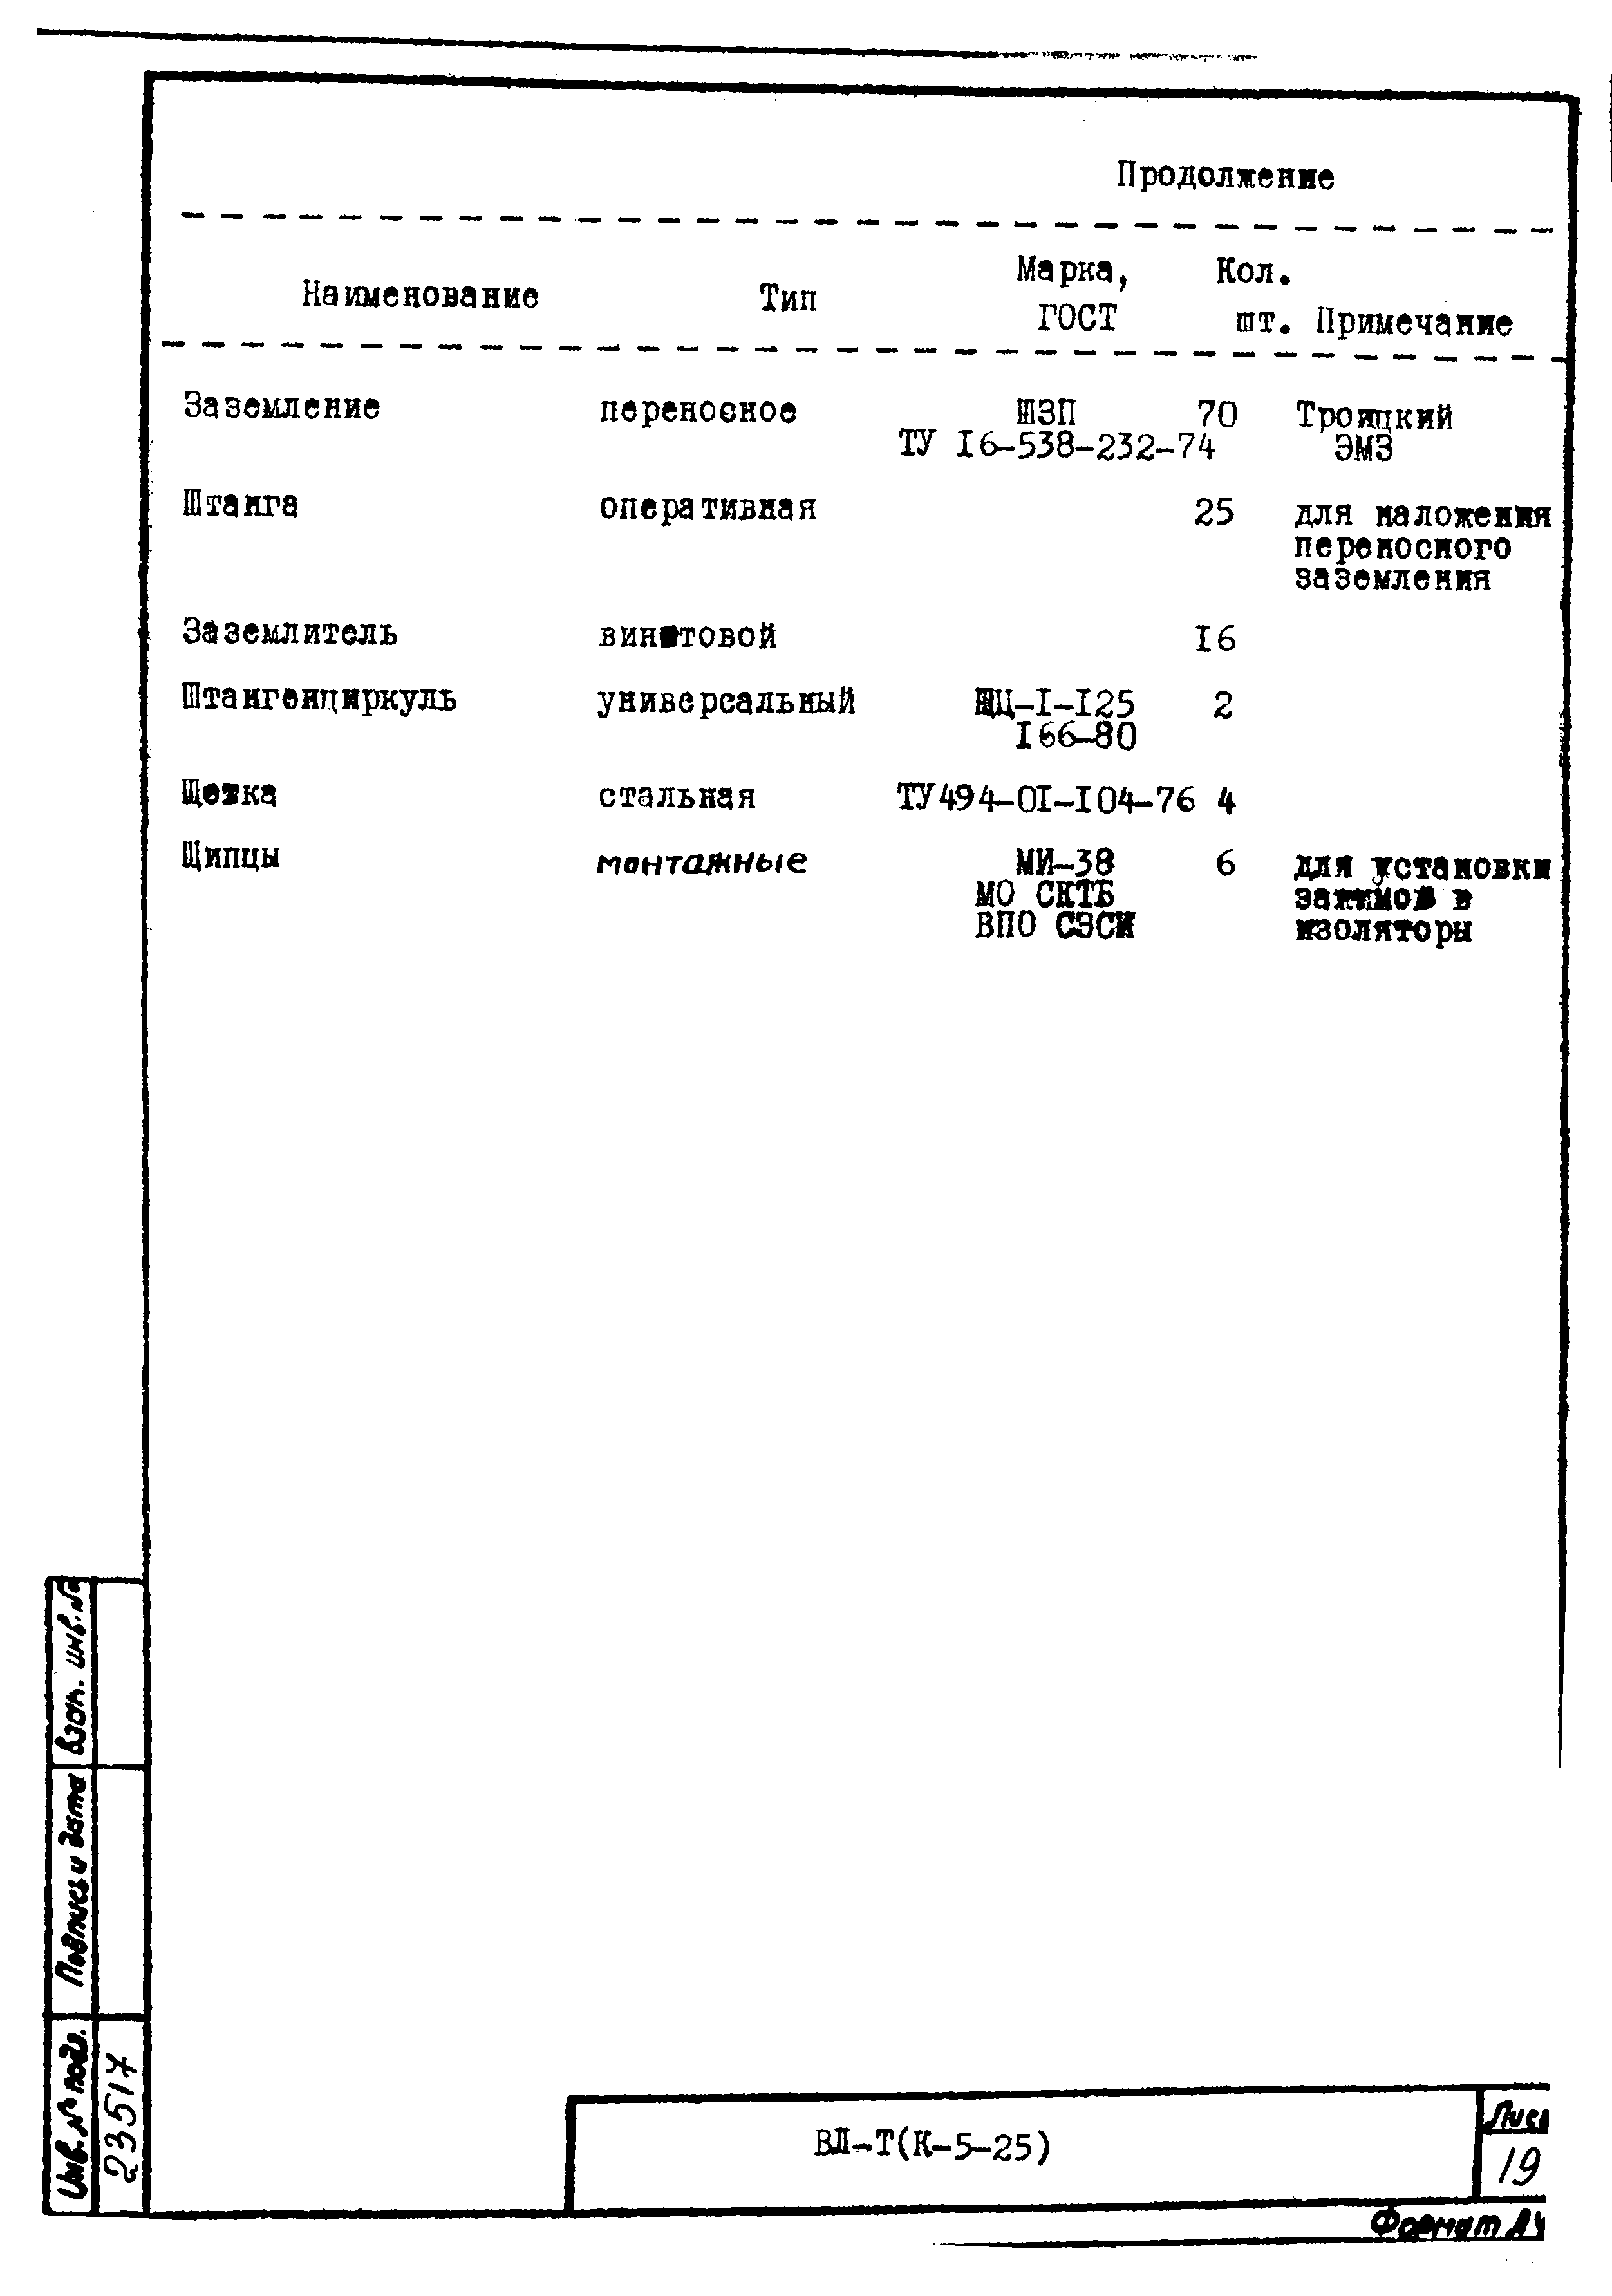 Технологическая карта К-5-25-1